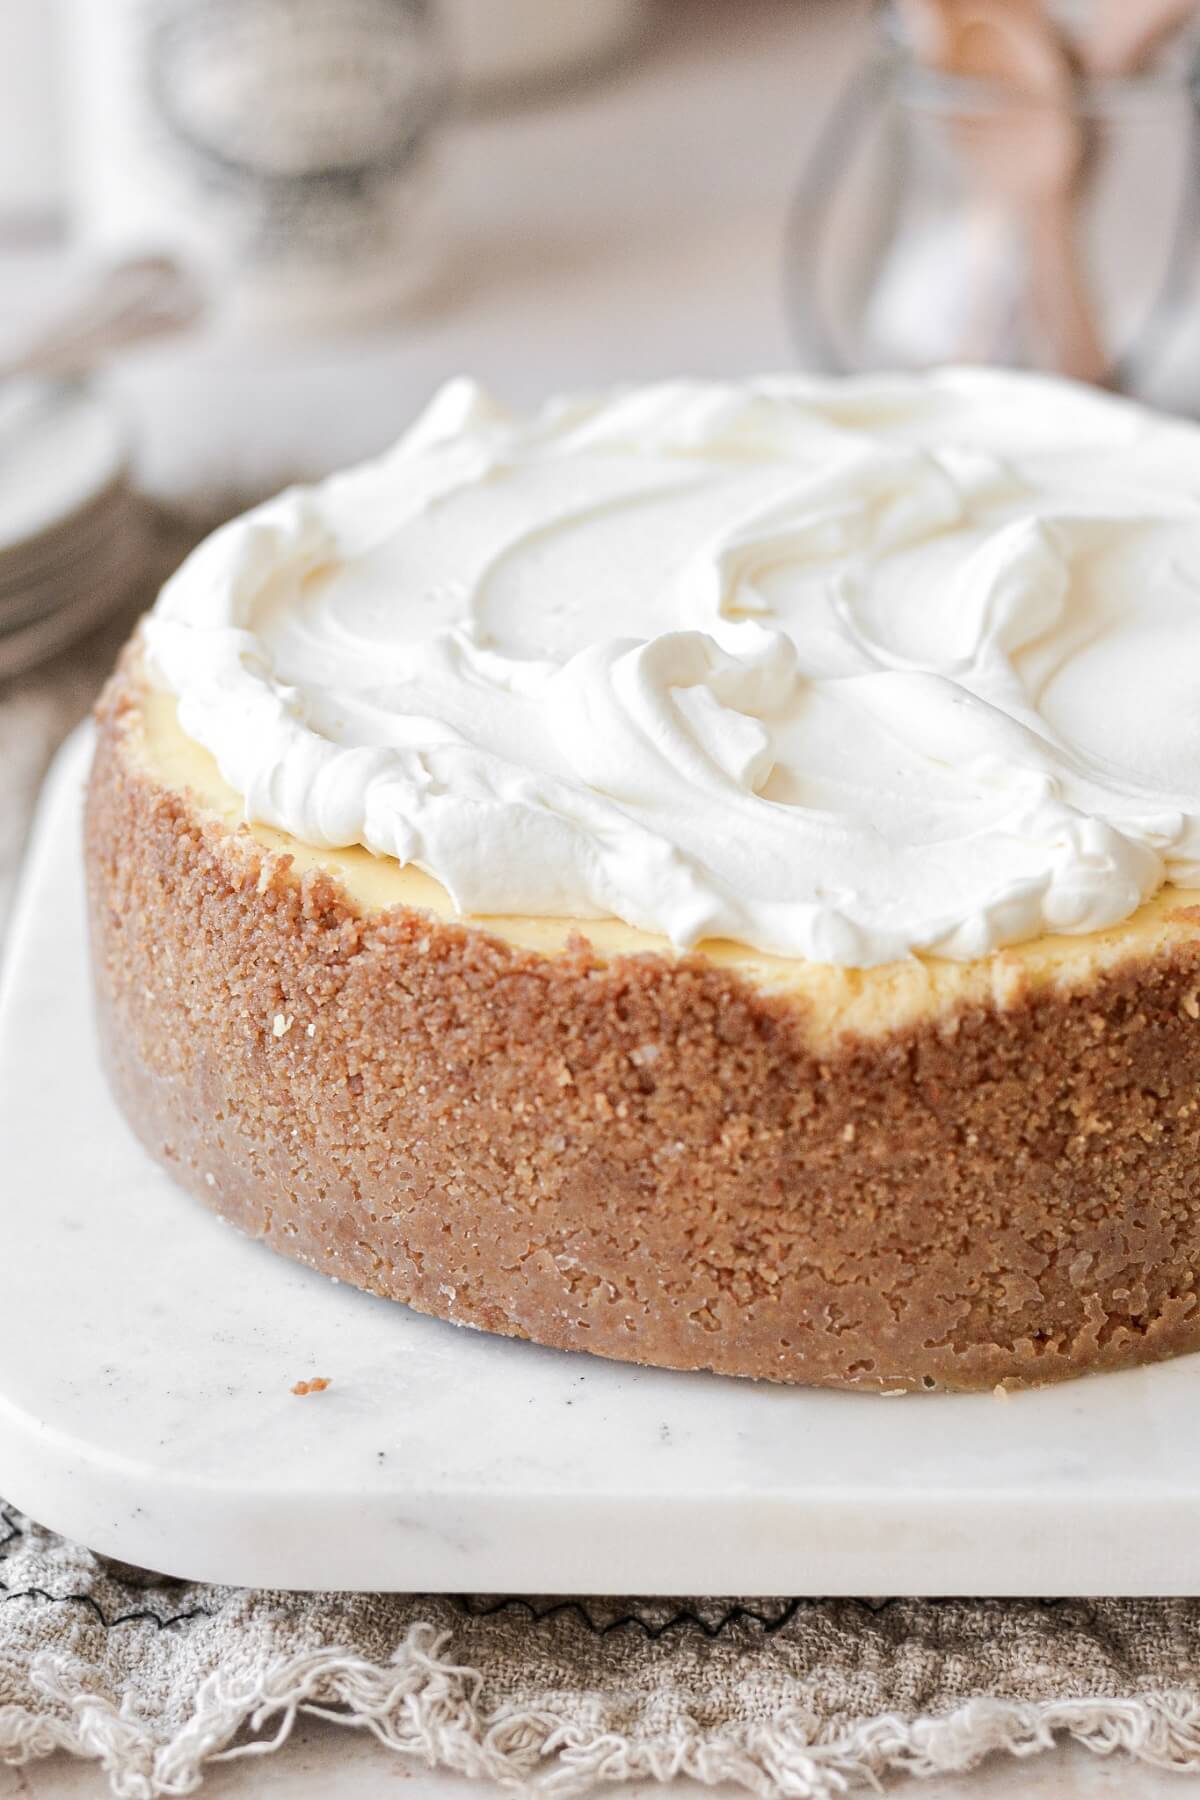 Whipped cream swirled on top of vanilla bean cheesecake.